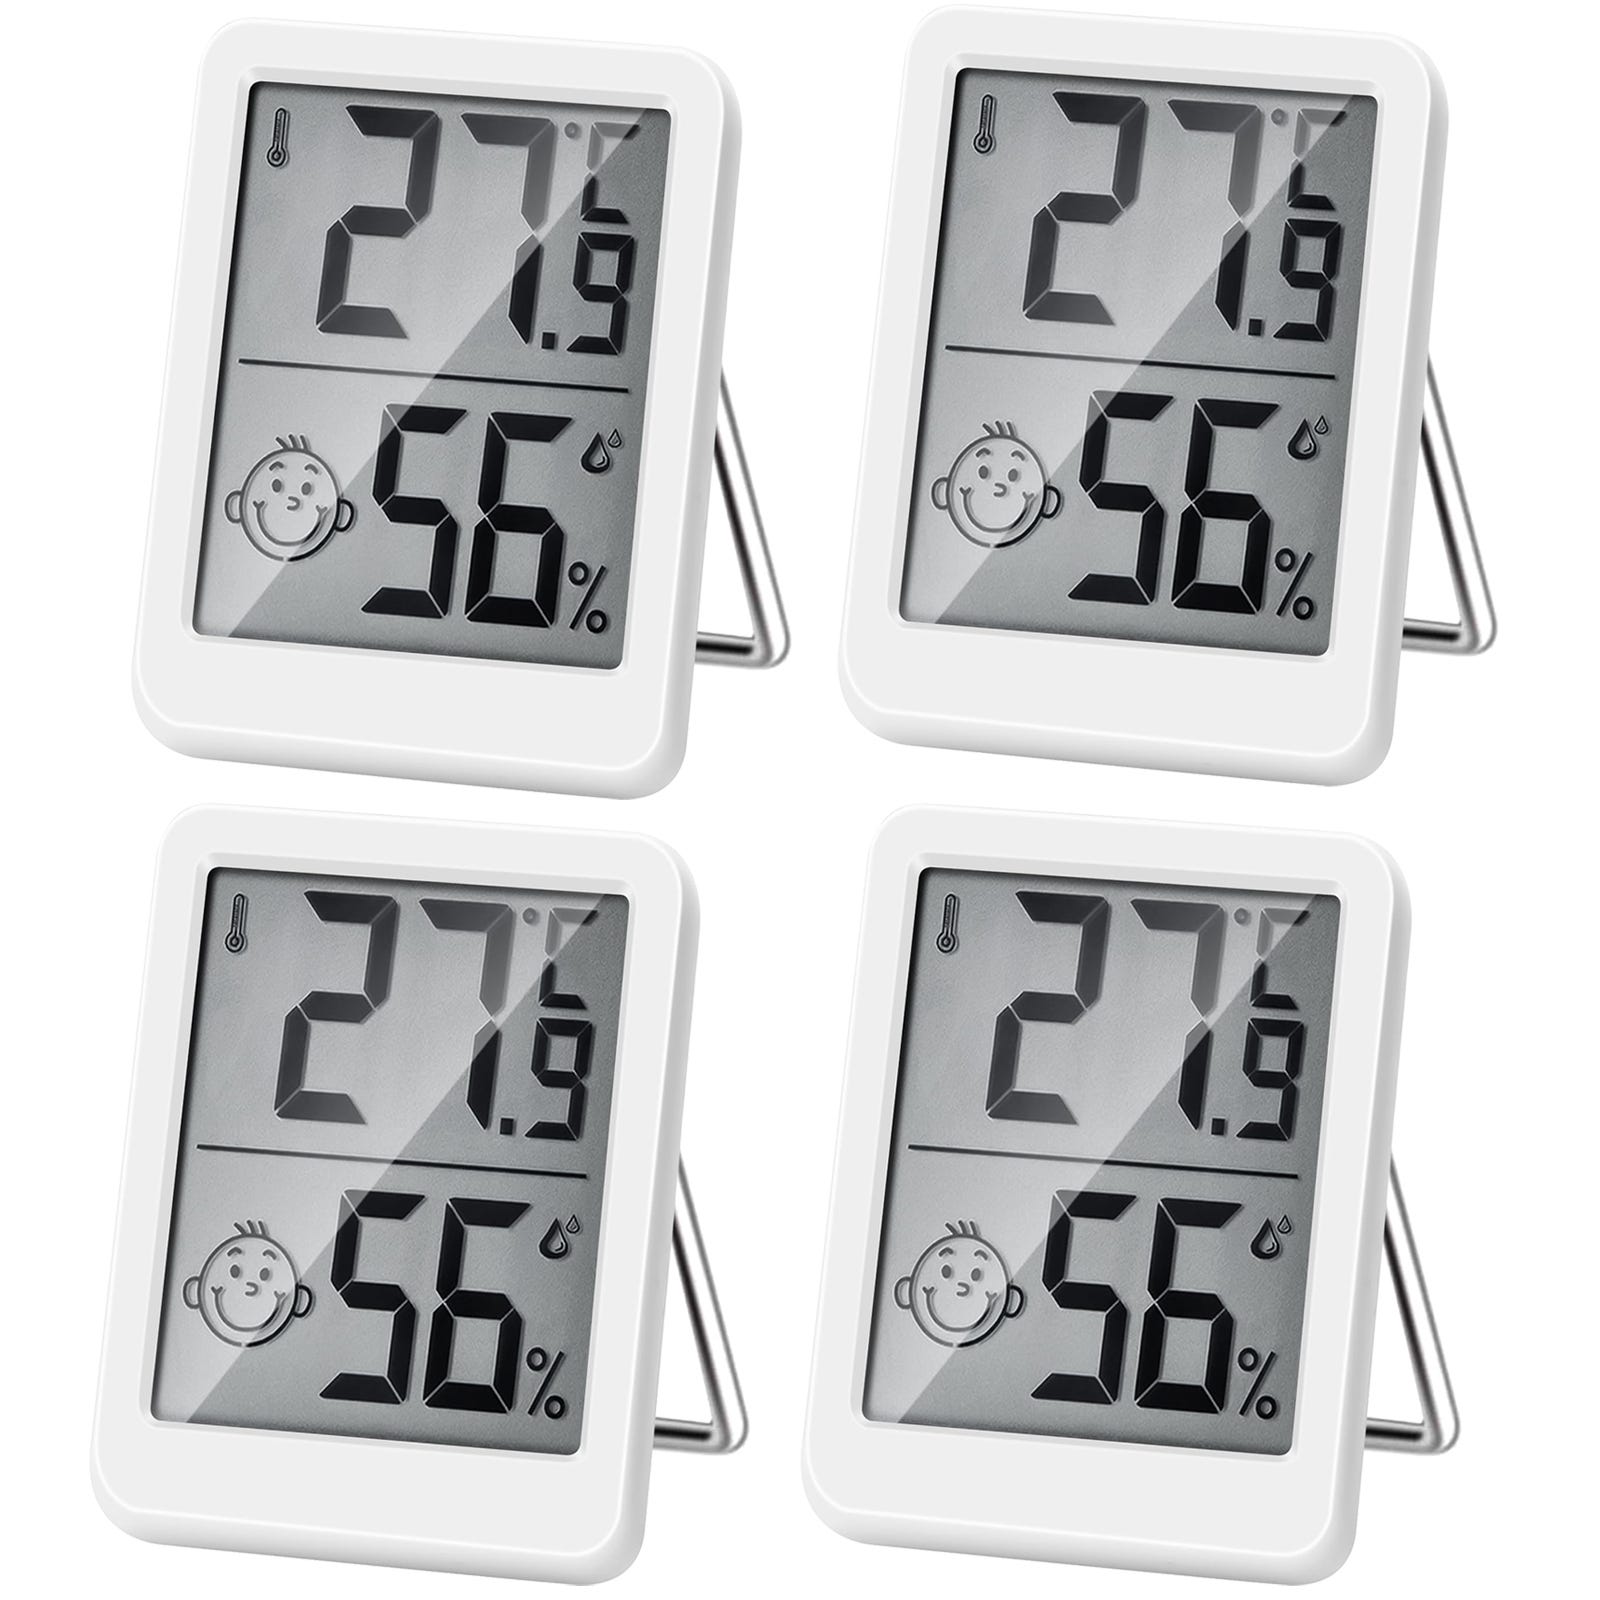 Thermometre Interieur Haute Precision